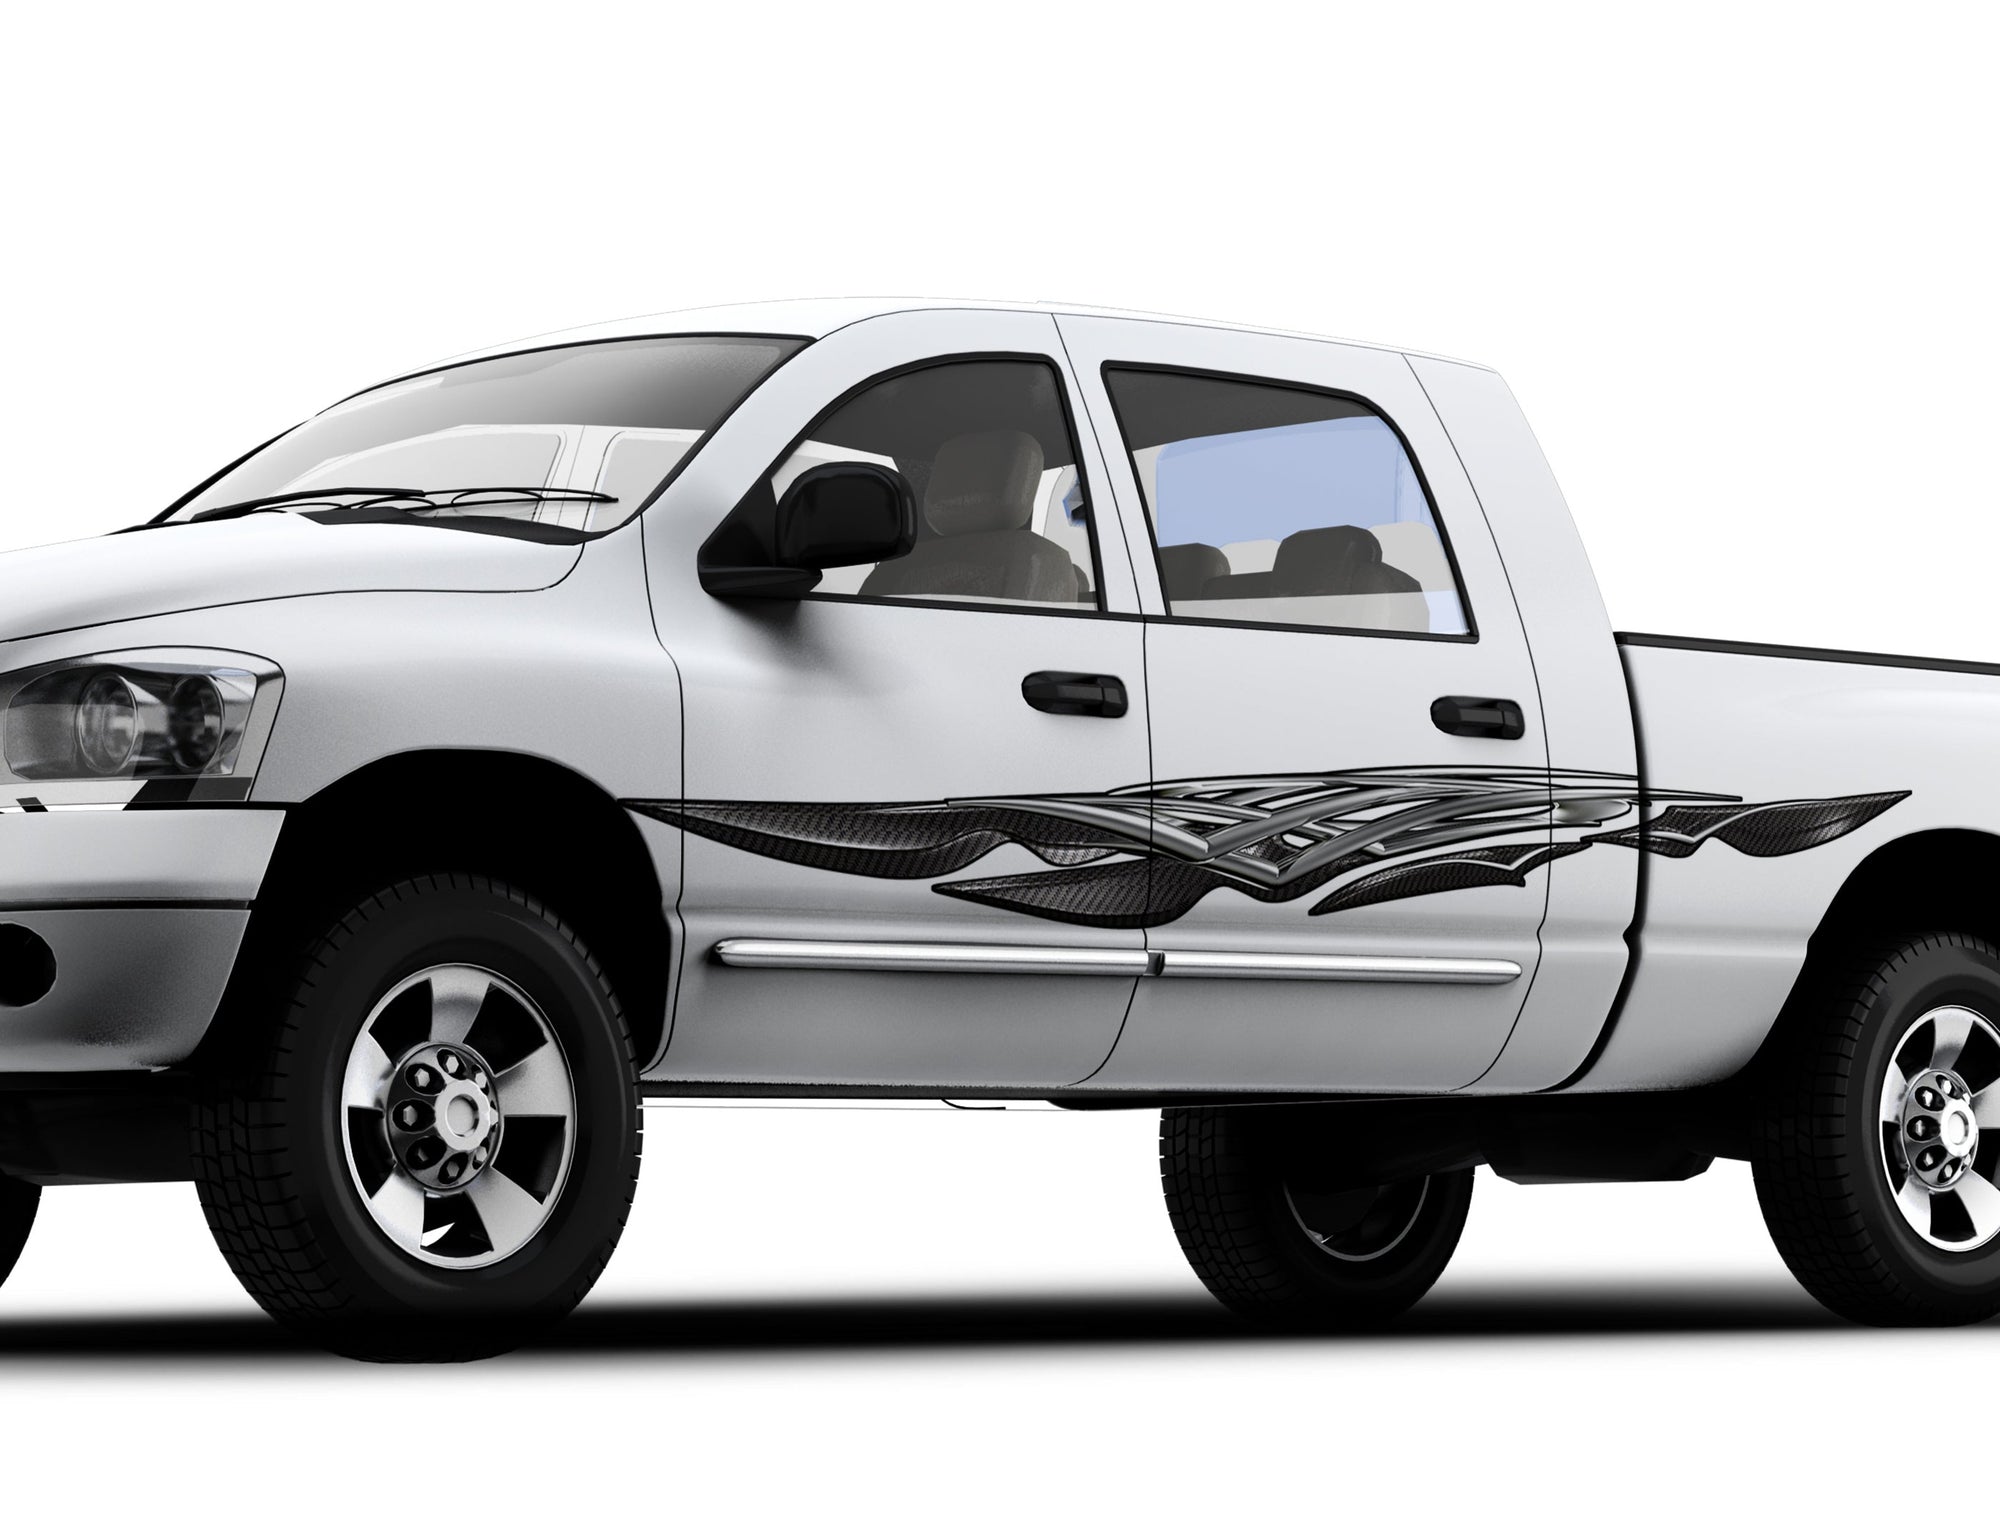 carbon fiber spear vinyl graphics on the side of white truck